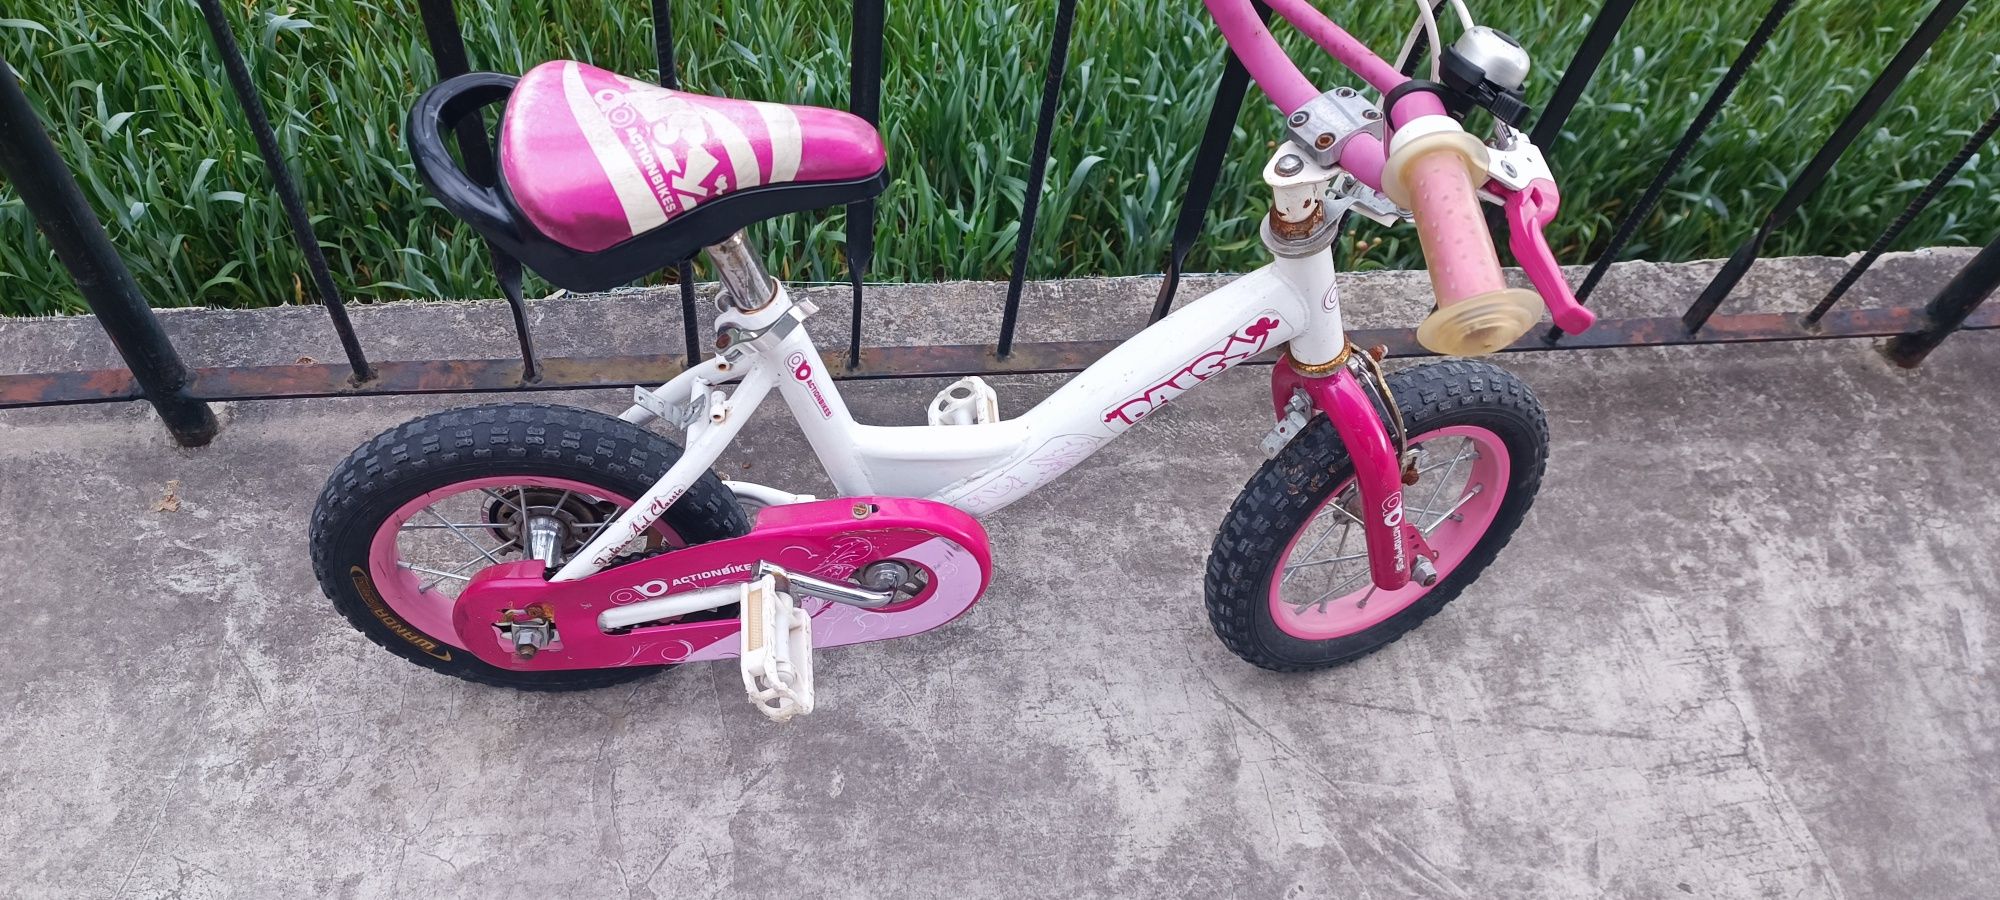 Rowerek różowy dla dziewczynki